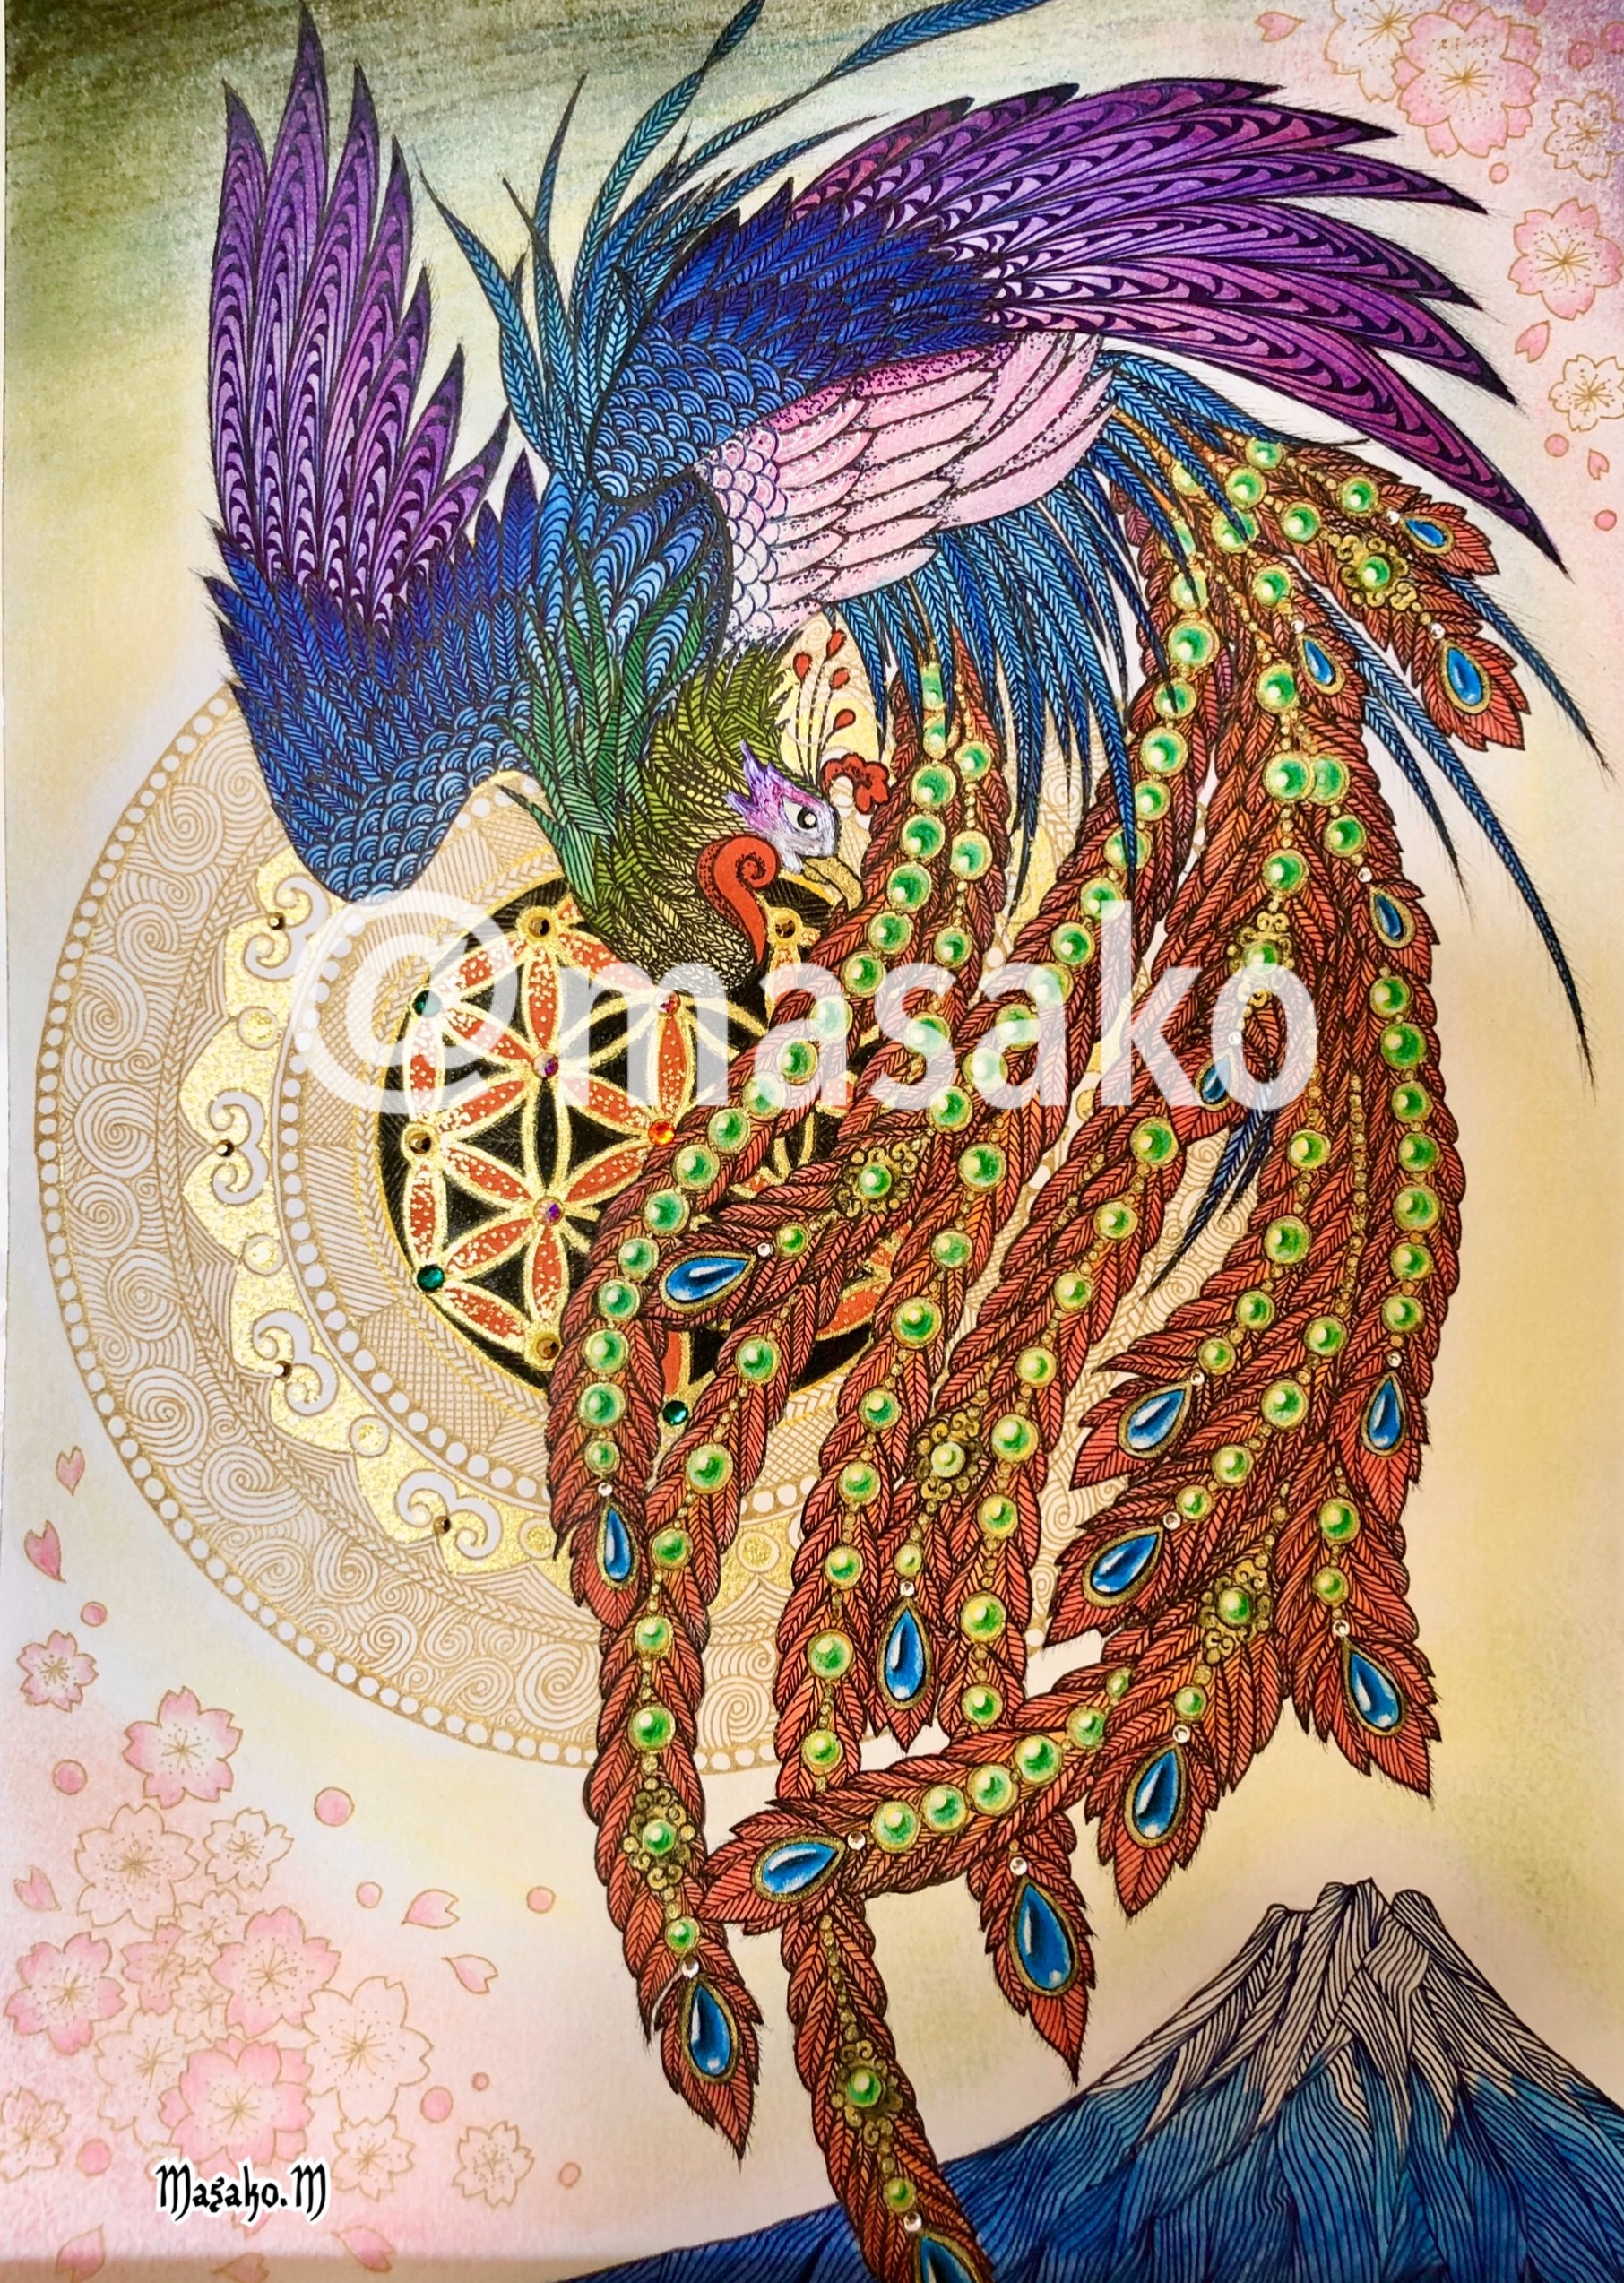 鳥の描き方 簡単なイラスト 天使の羽 孔雀 鳳凰 フクロウ 鶴の家紋まで 脳トレになる曼荼羅アートセラピー